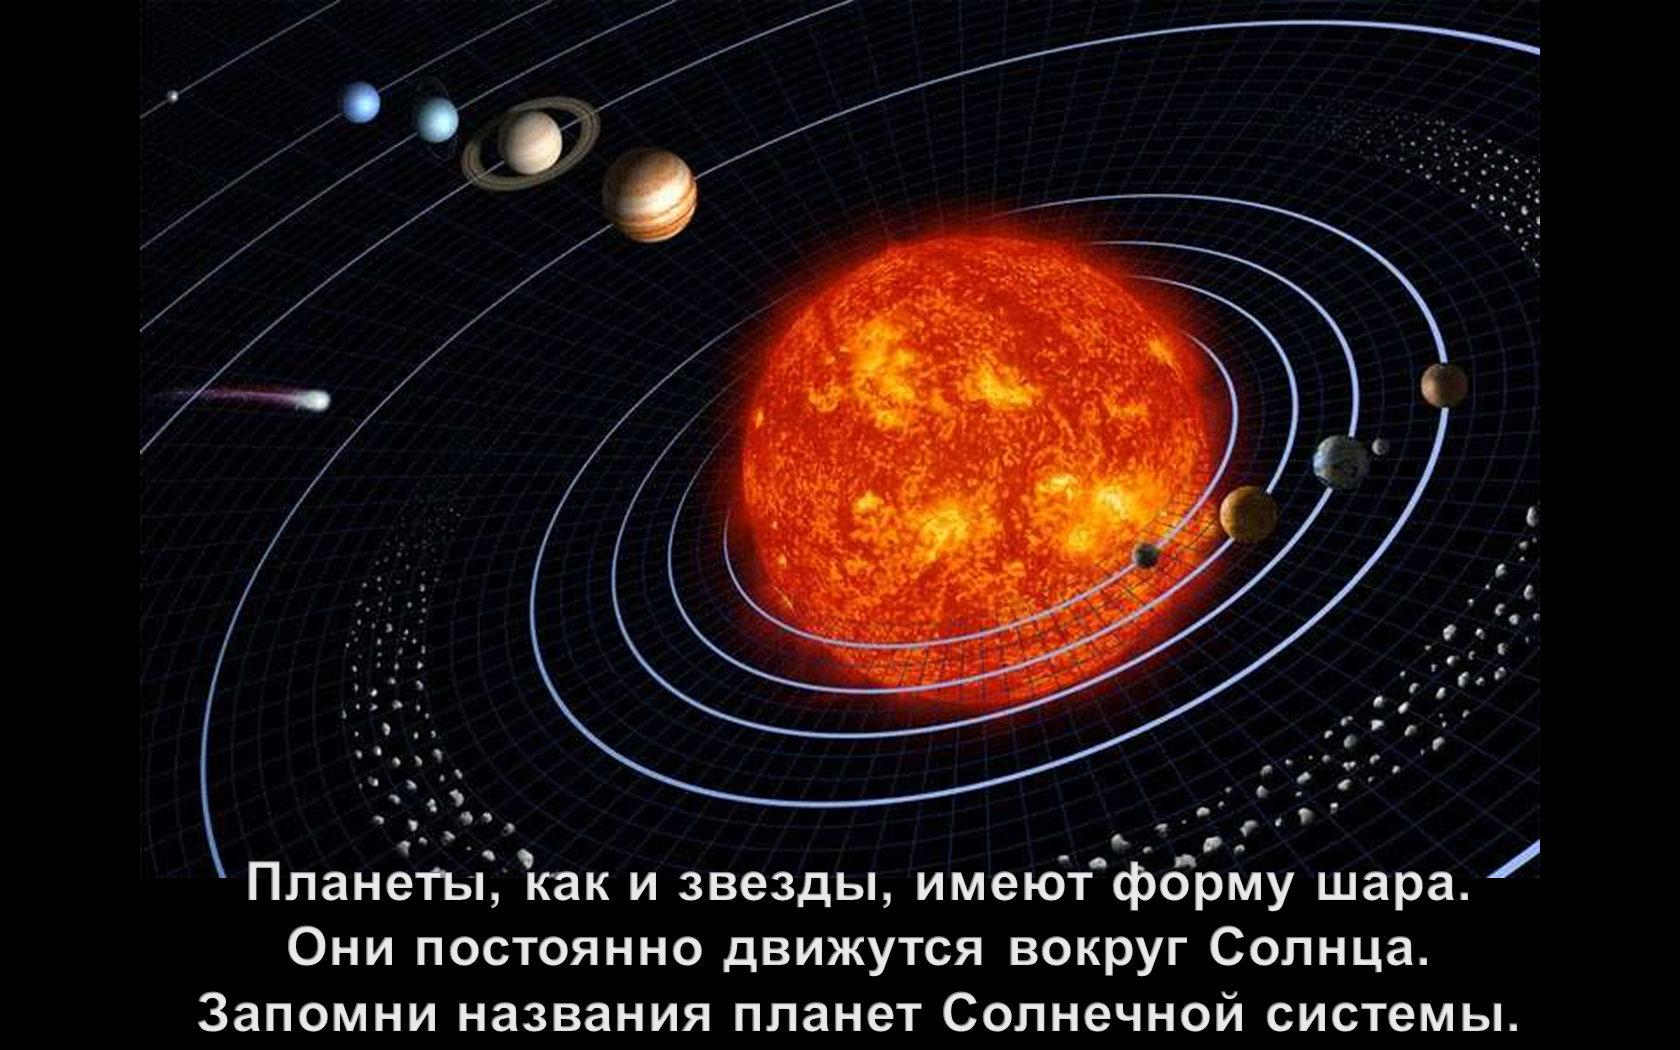 Урок по познания мира. Тема: Земля – космическое тело. Понятие о космосе. Изучение космоса человеком